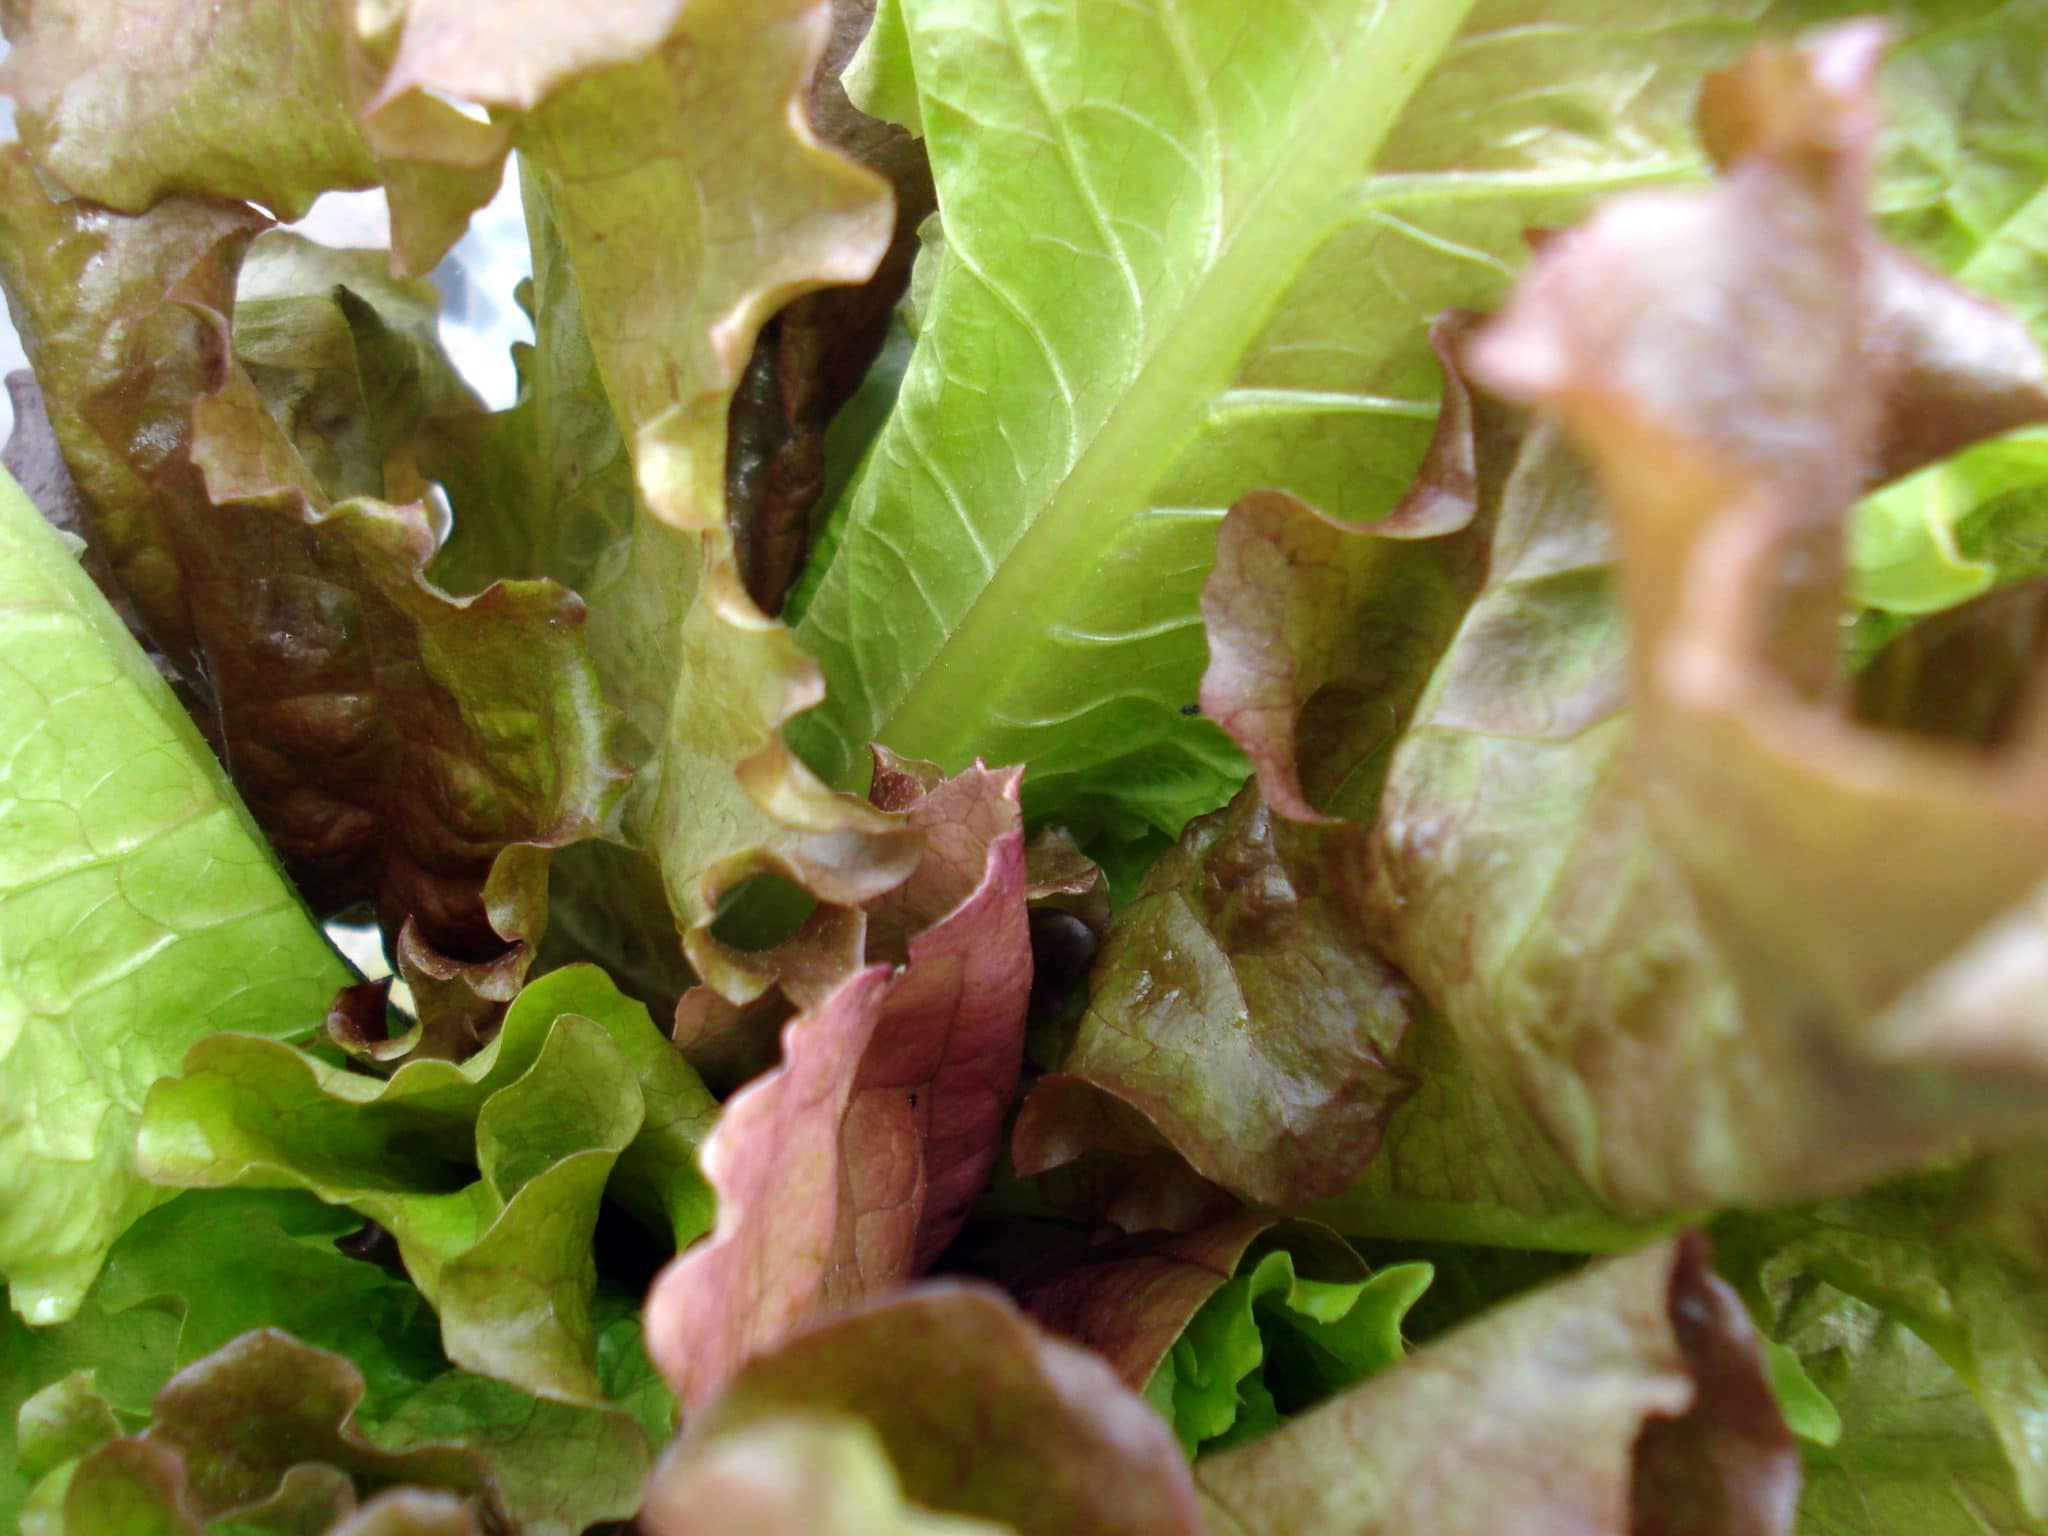 Close up of Romaine lettuce